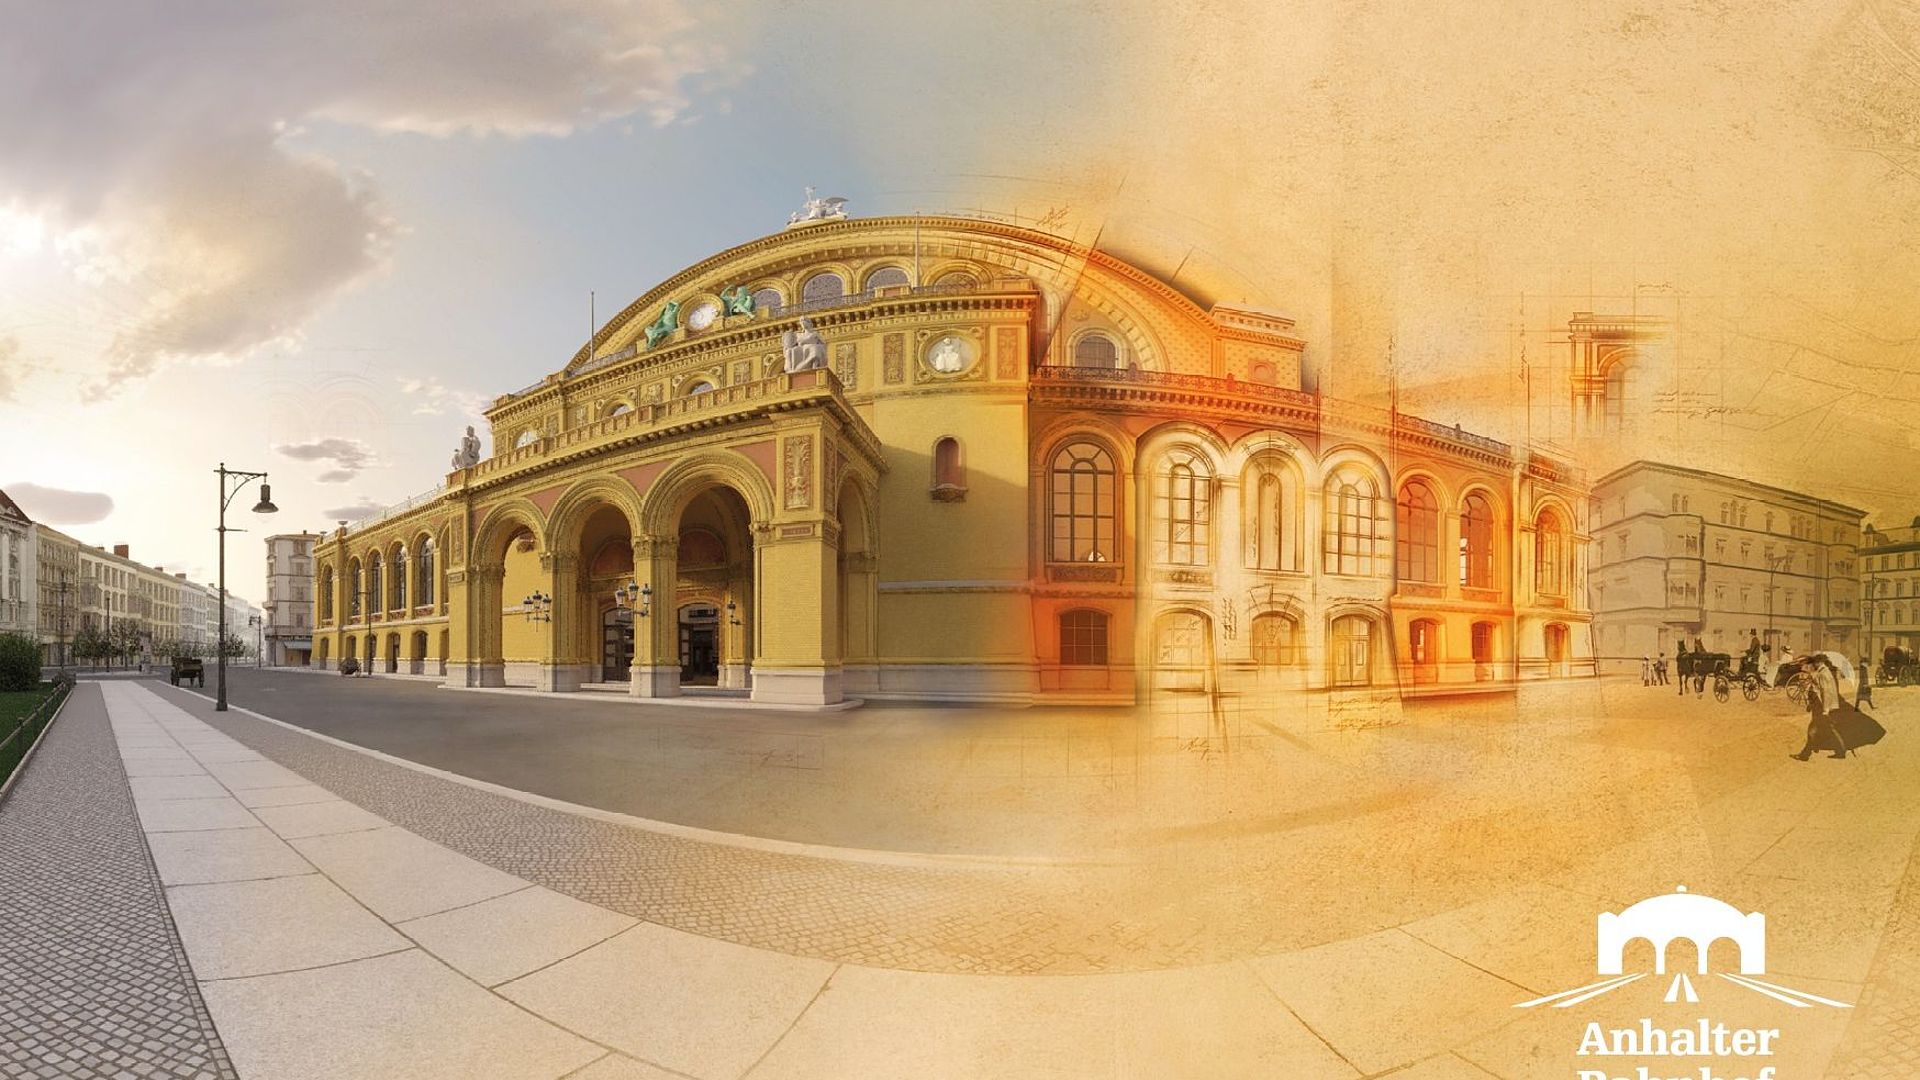 Die Fassade des Eingangsgebäudes des Anhalter Bahnhofs als virtuelle Rekonstruktion. Die rechte Seite des Gebäudes ist mit gezeichneten Elementen und Figuren ausgeschmückt. 